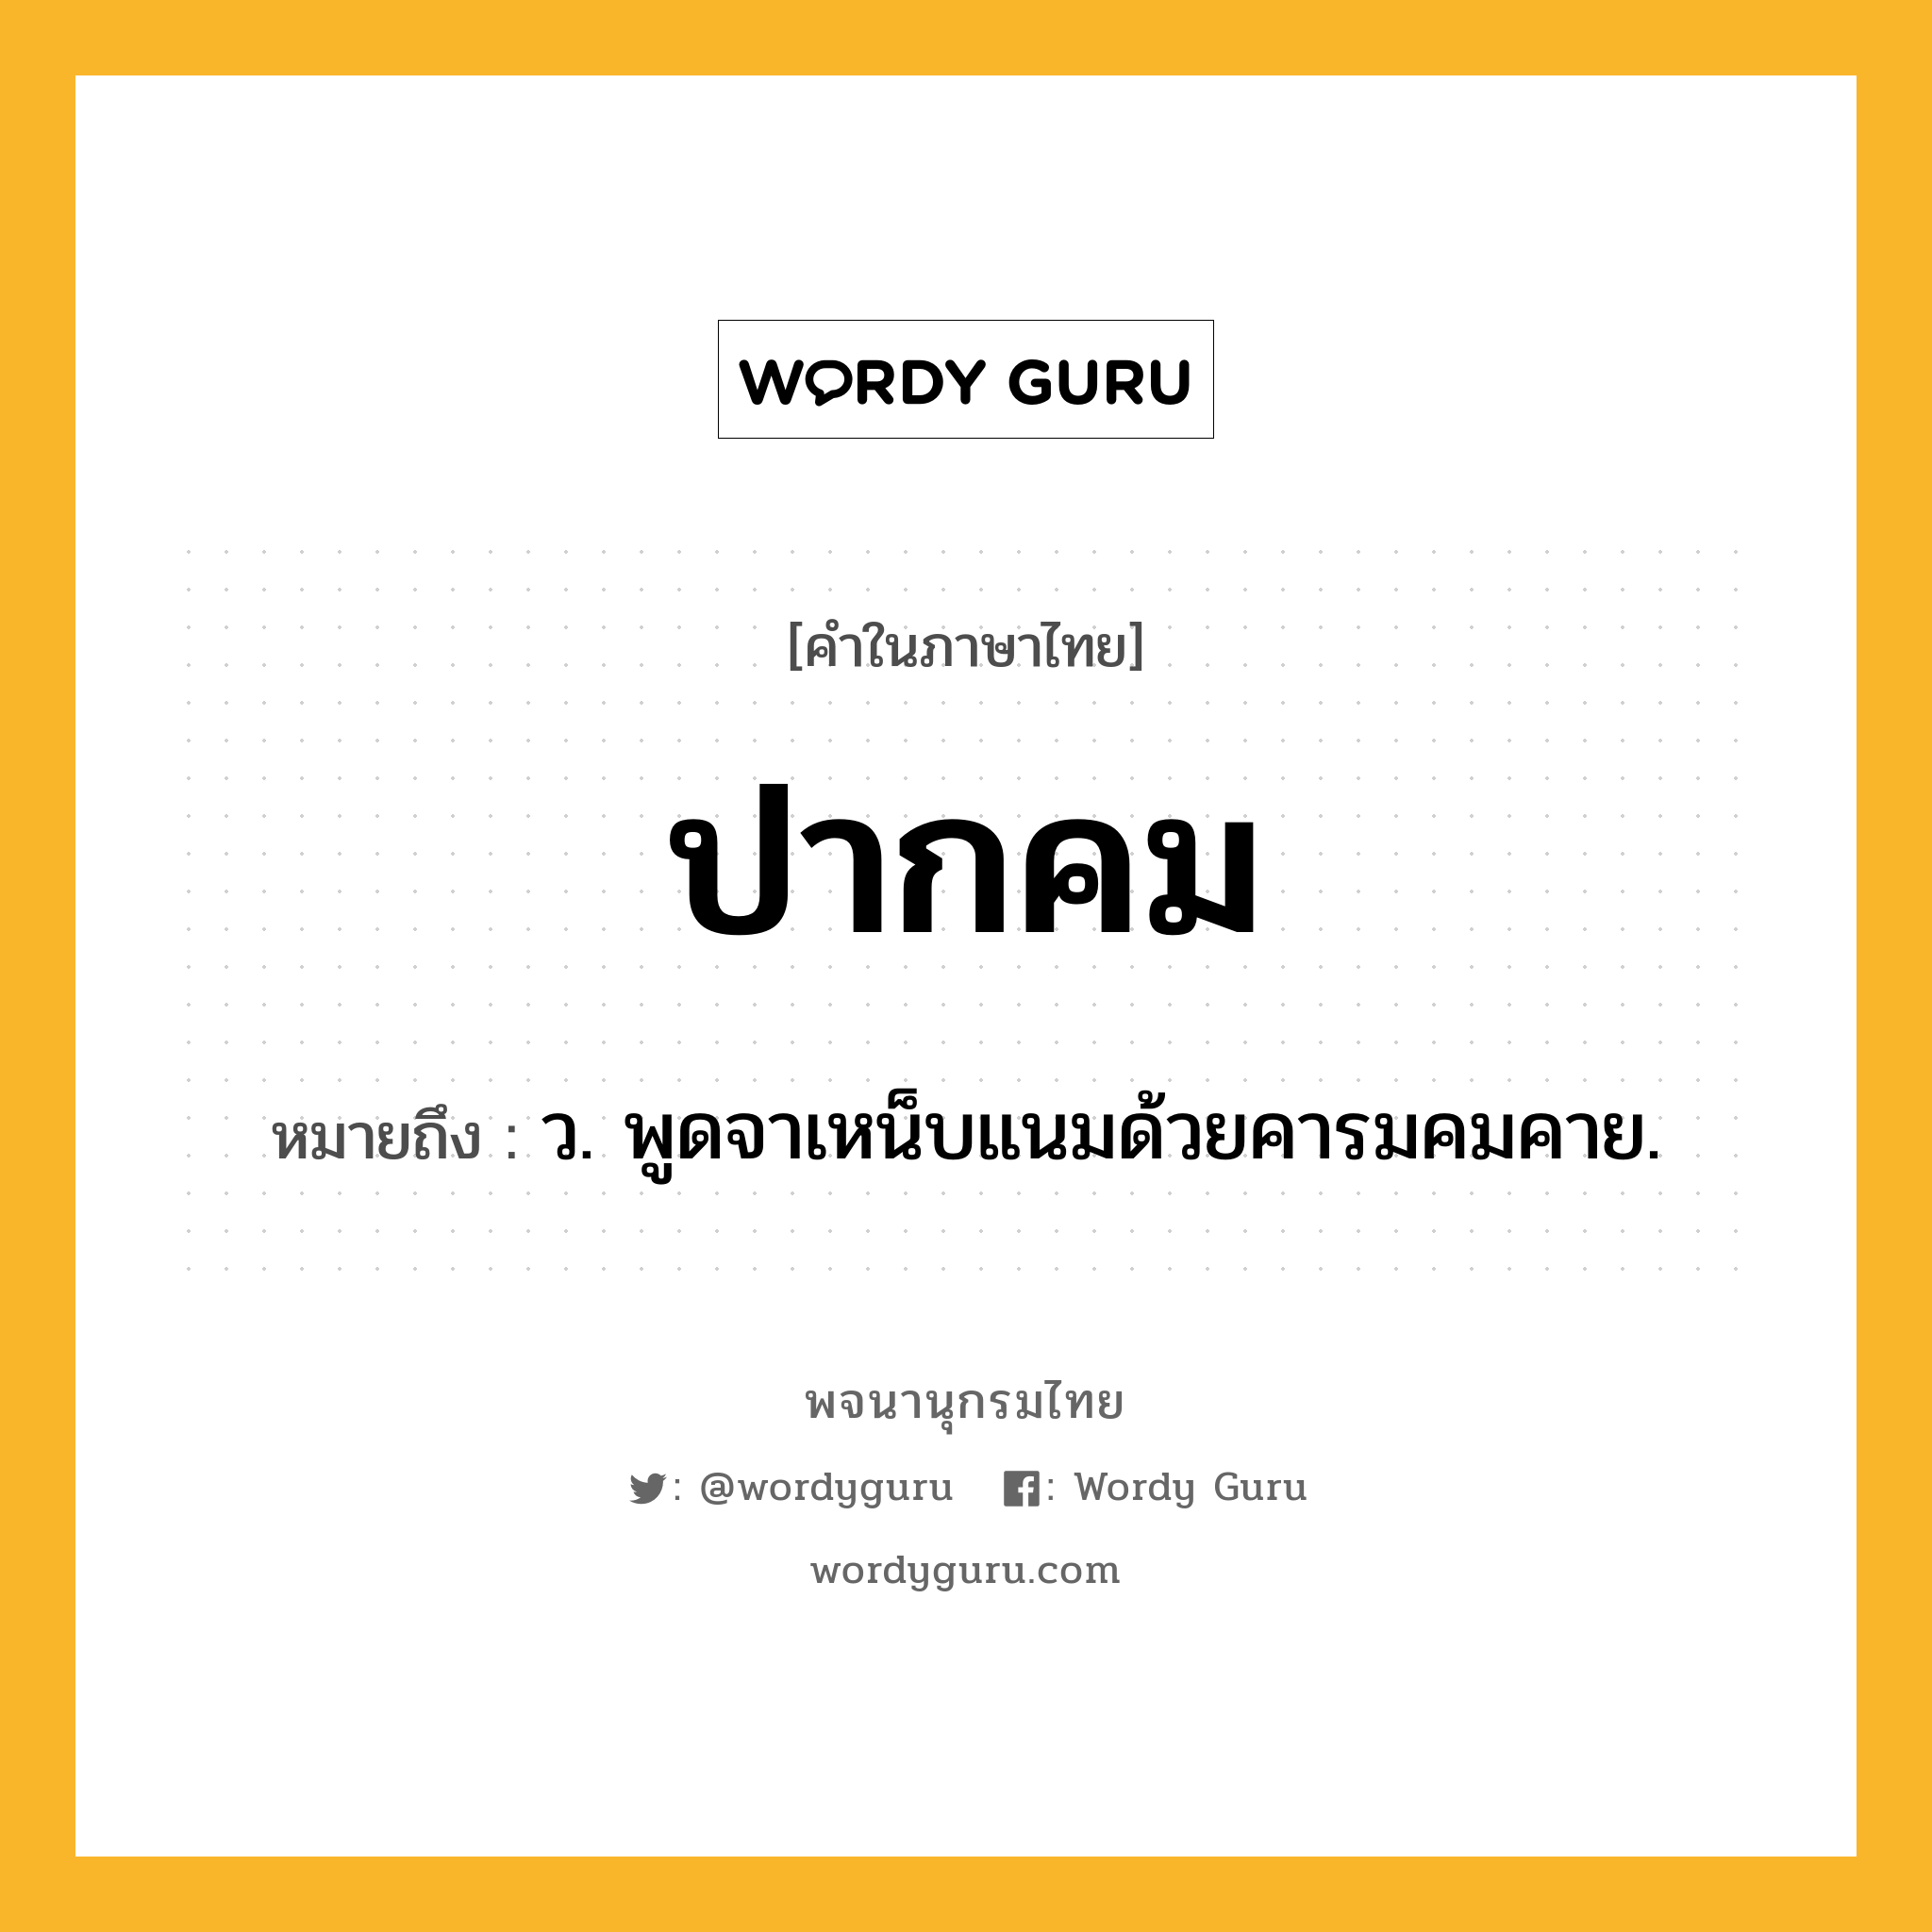 ปากคม ความหมาย หมายถึงอะไร?, คำในภาษาไทย ปากคม หมายถึง ว. พูดจาเหน็บแนมด้วยคารมคมคาย.